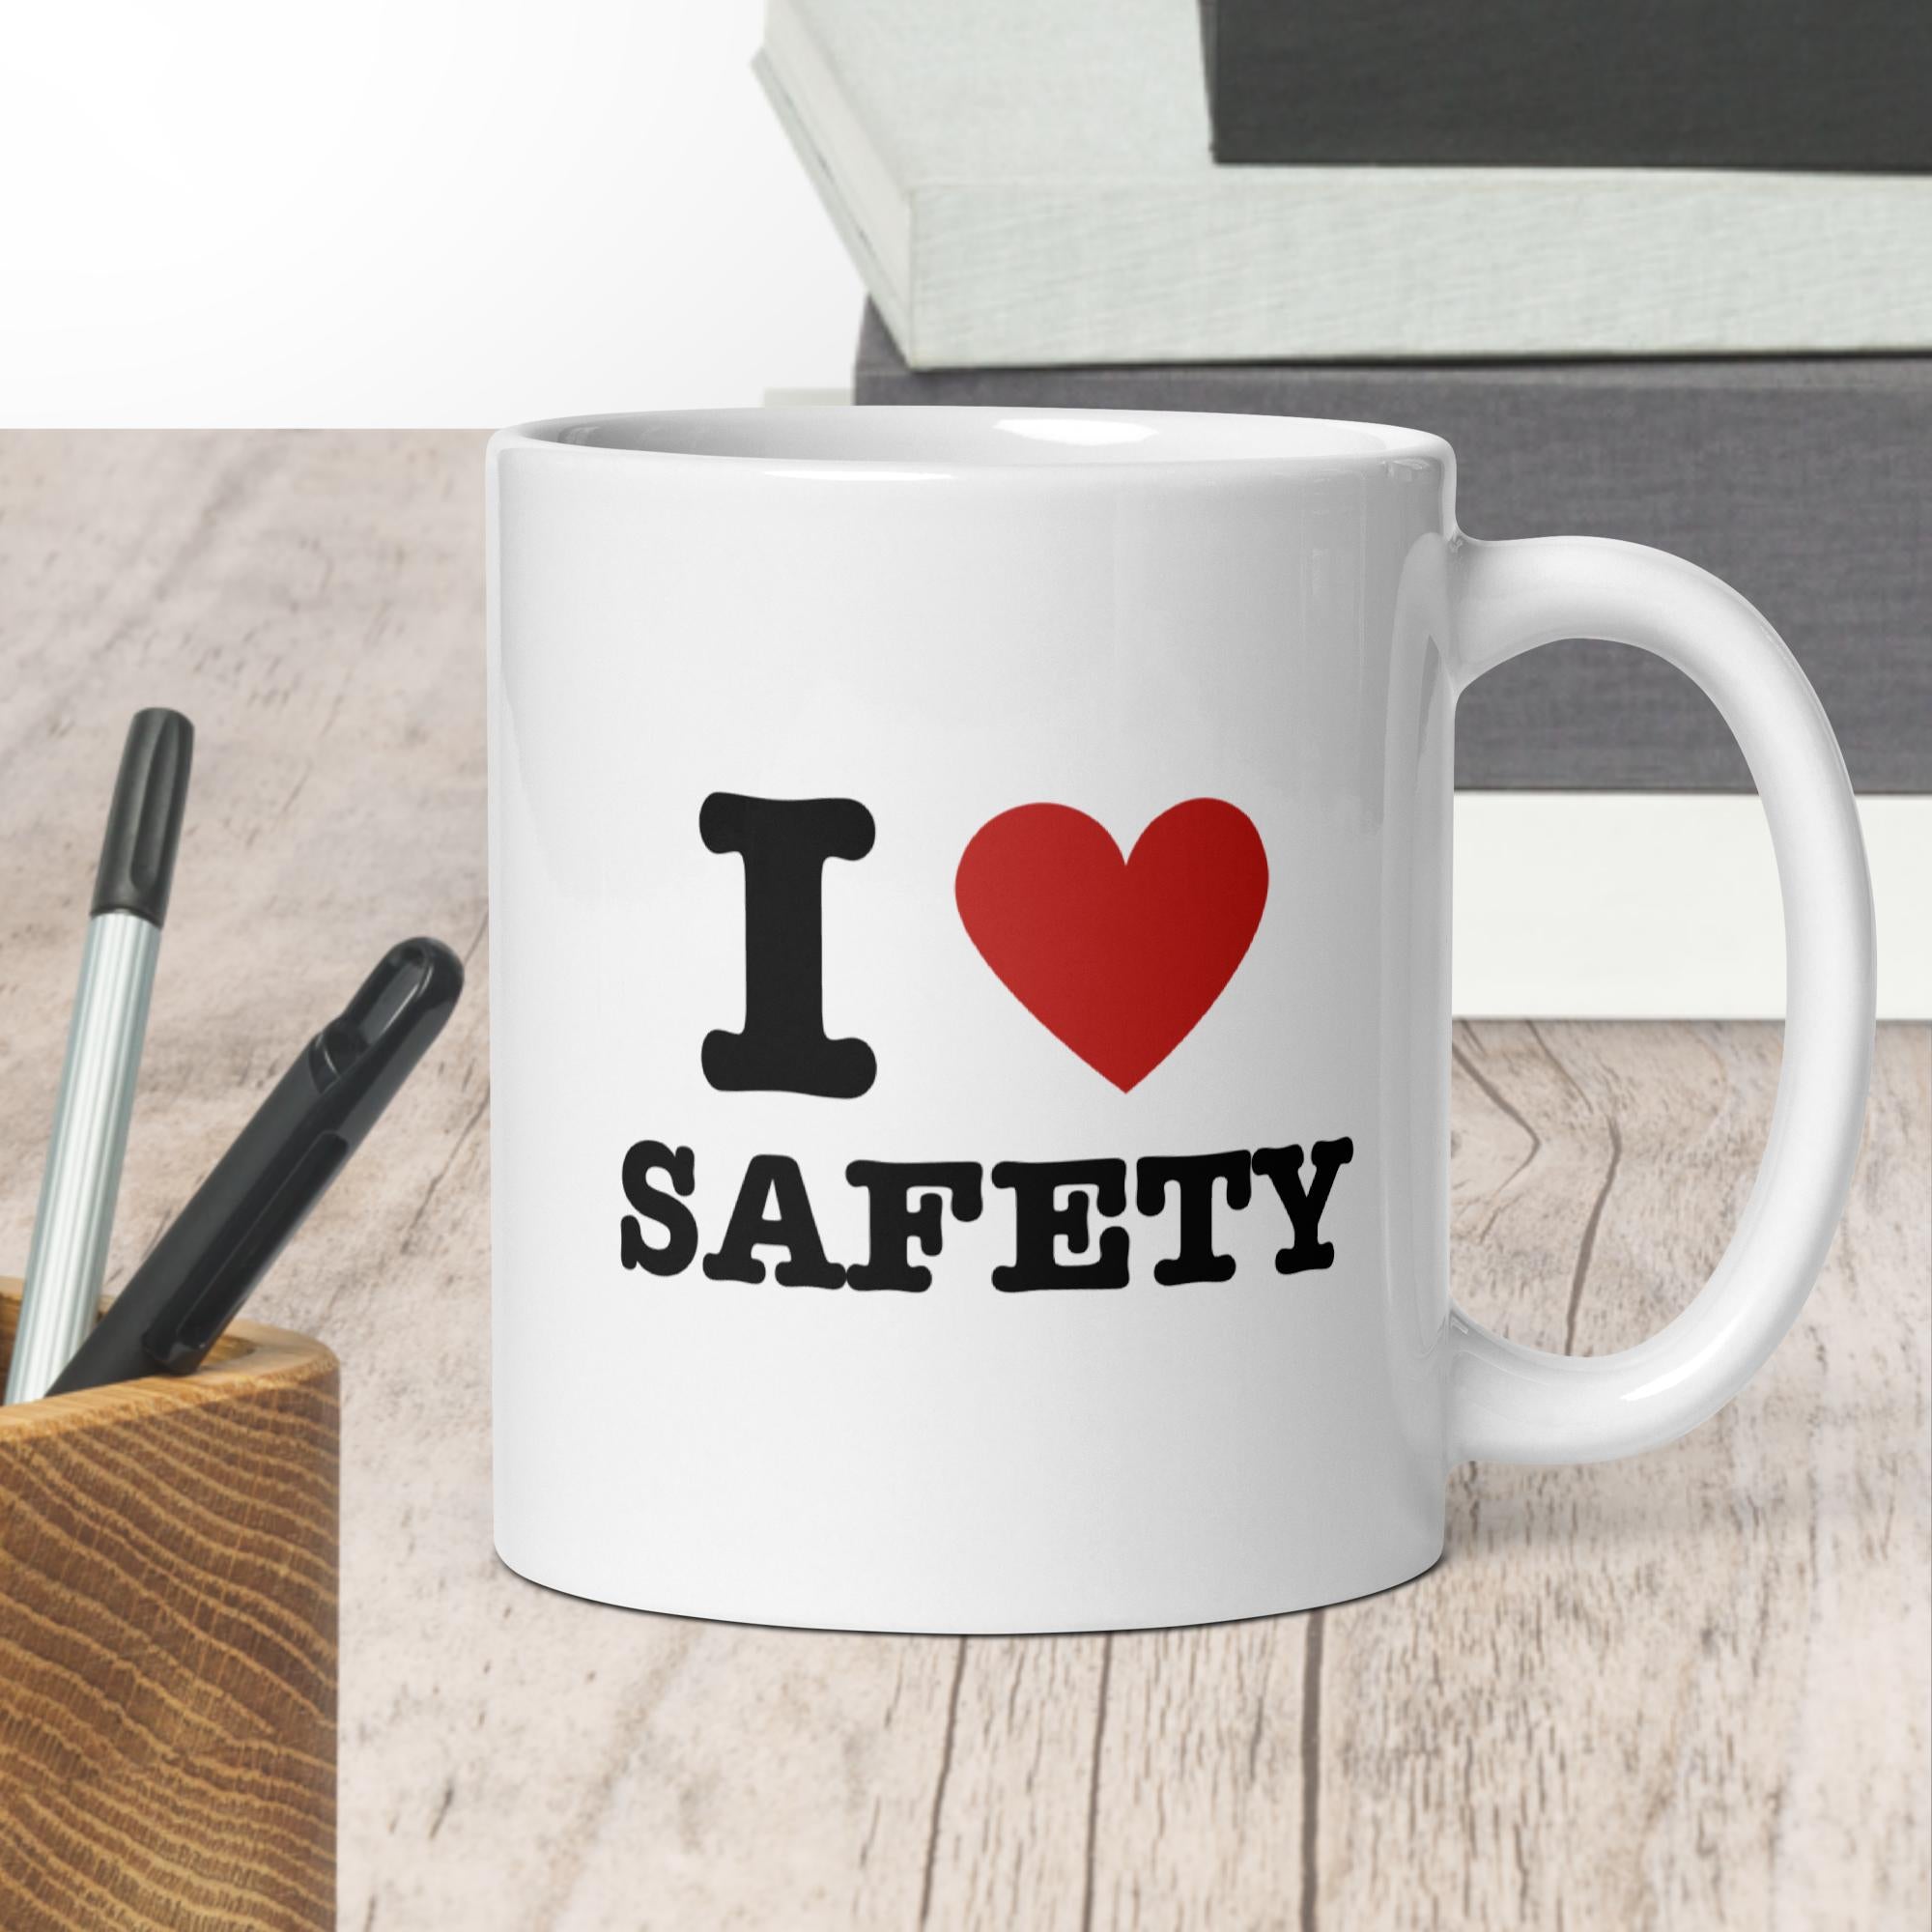 I Heart Safety Mug